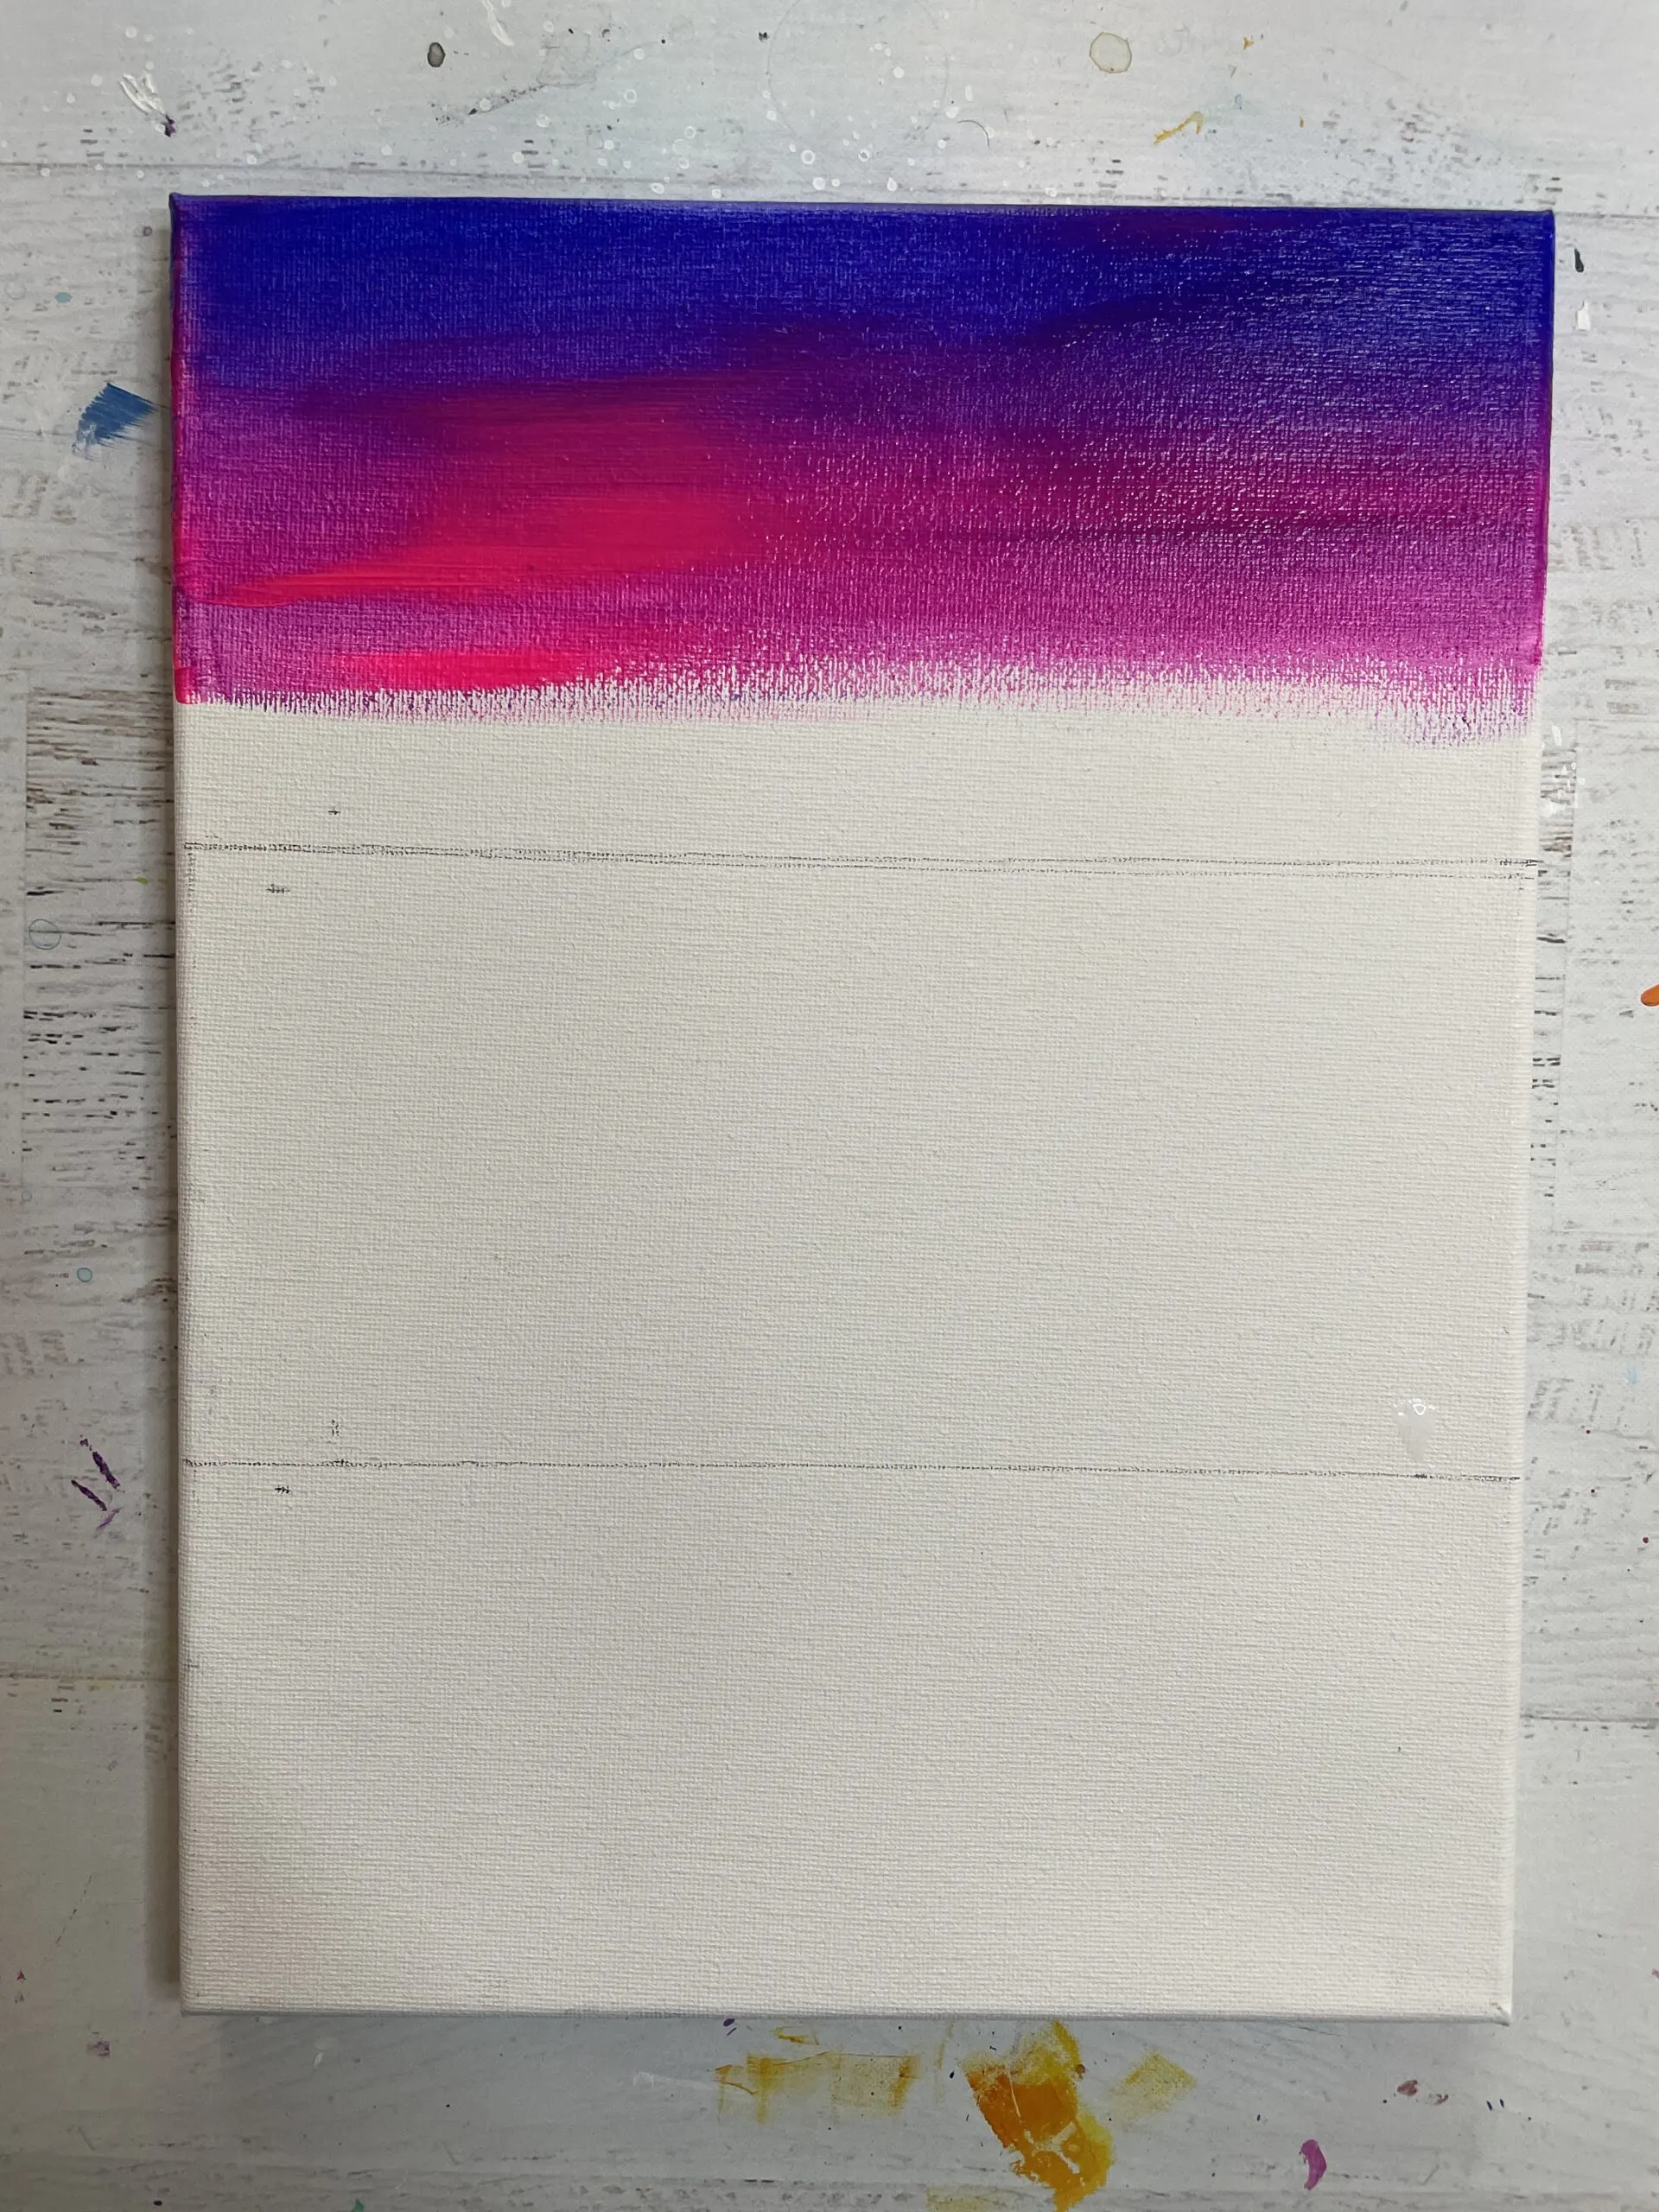 how to paint a sunset beach sky blending